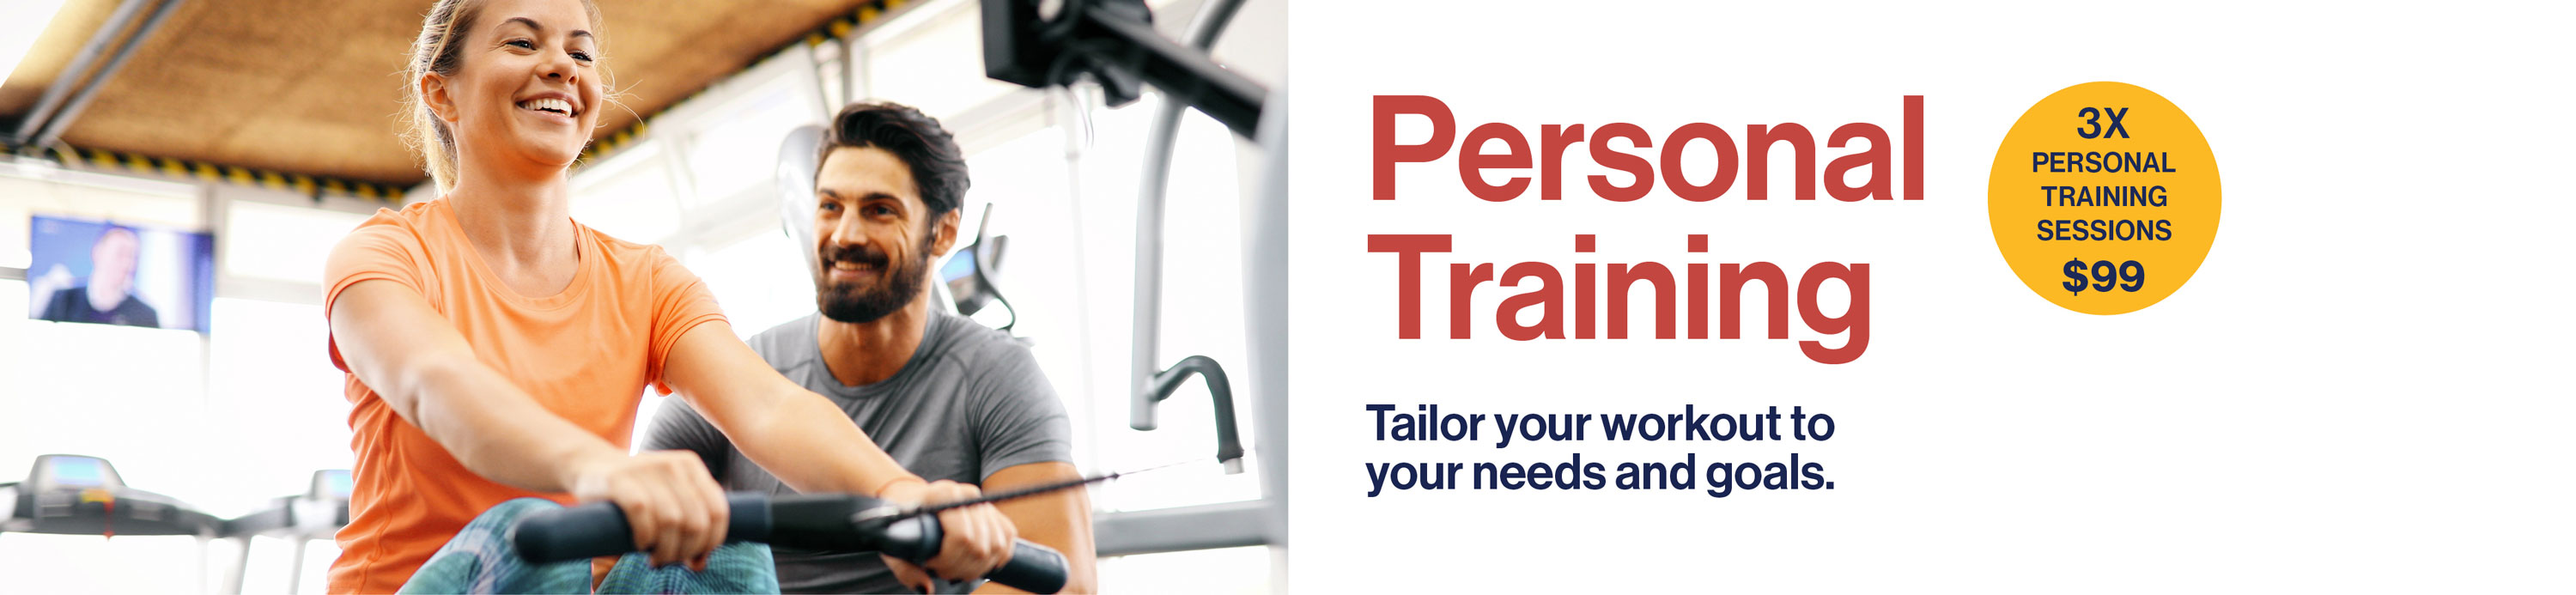 Personal Training Offer Website Banner.jpg